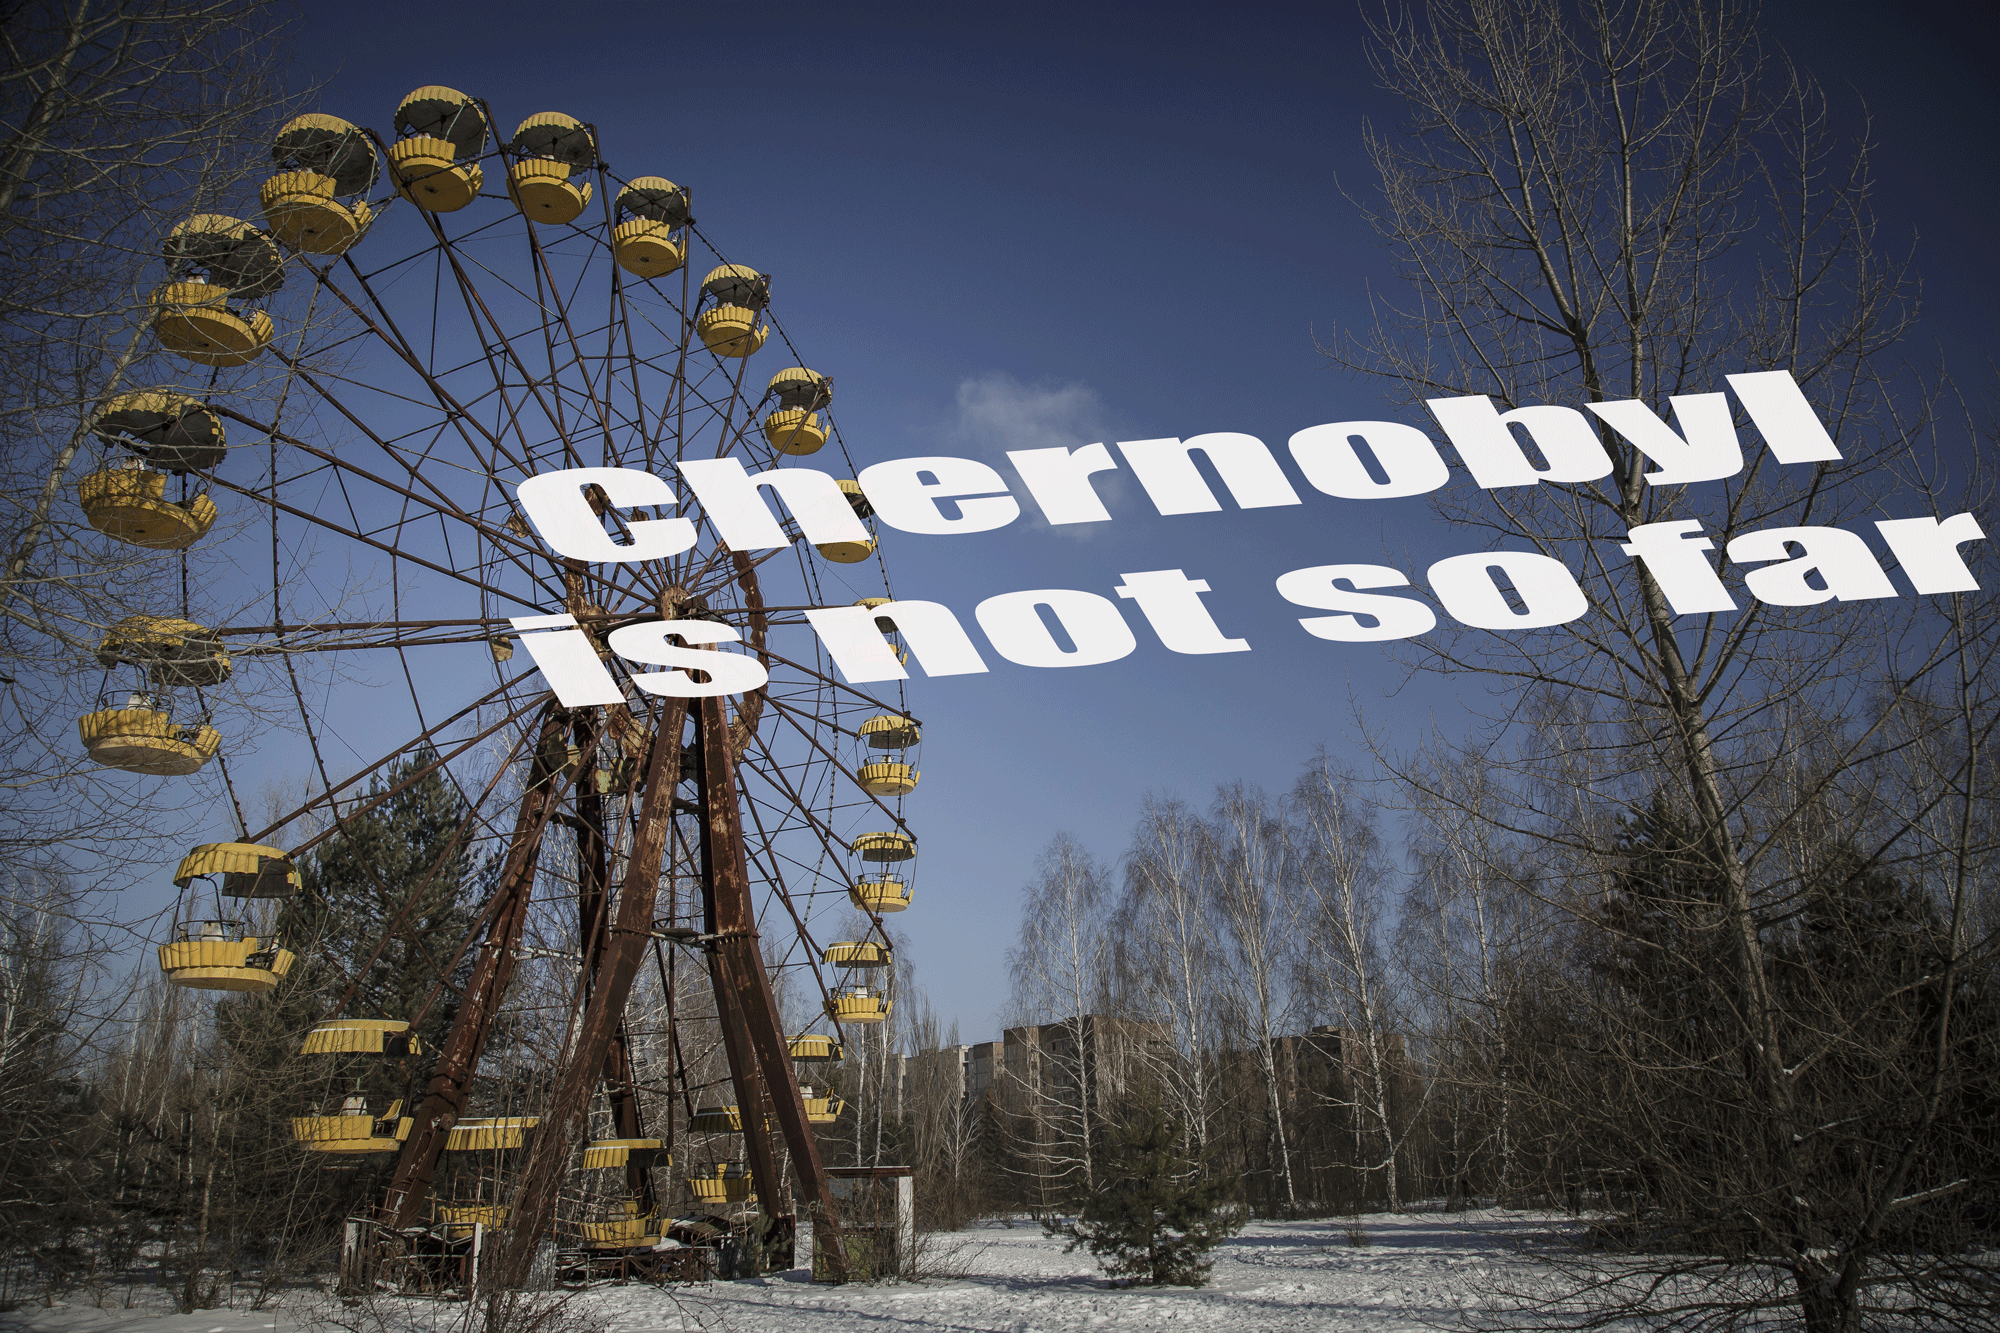 Chernobyl is not so far